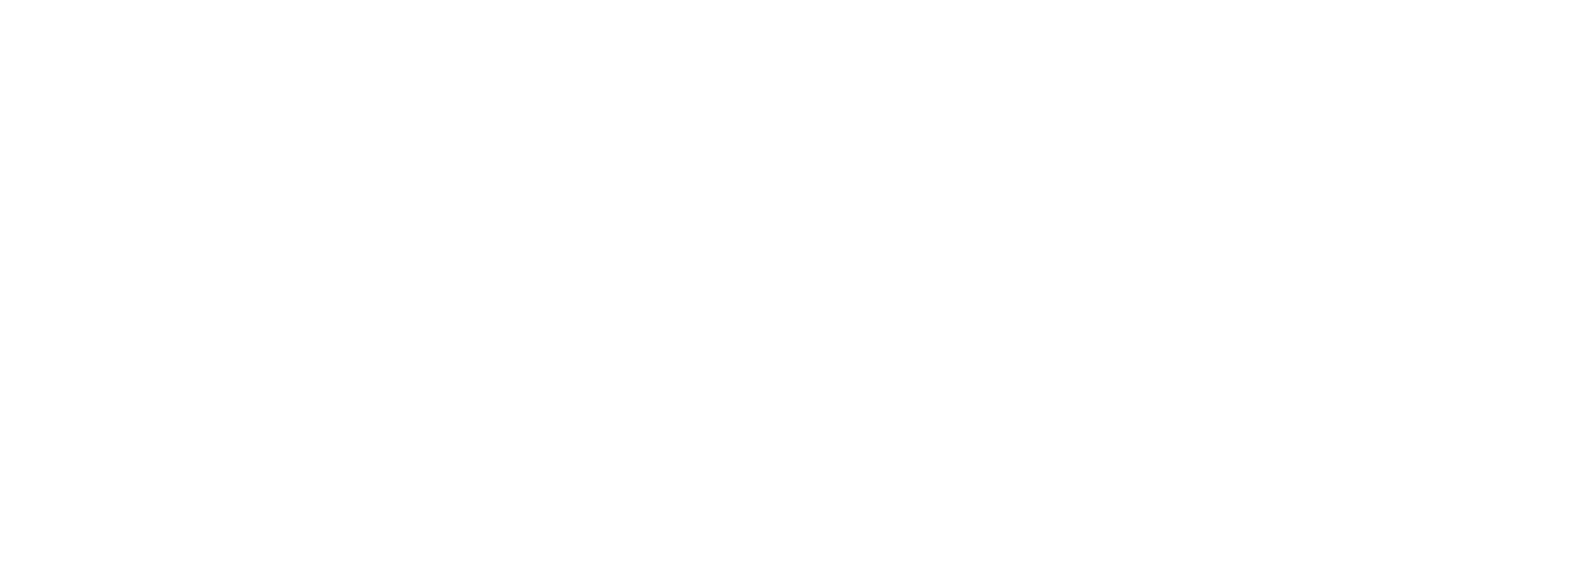 ElringKlinger Logo groß für dunkle Hintergründe (transparentes PNG)